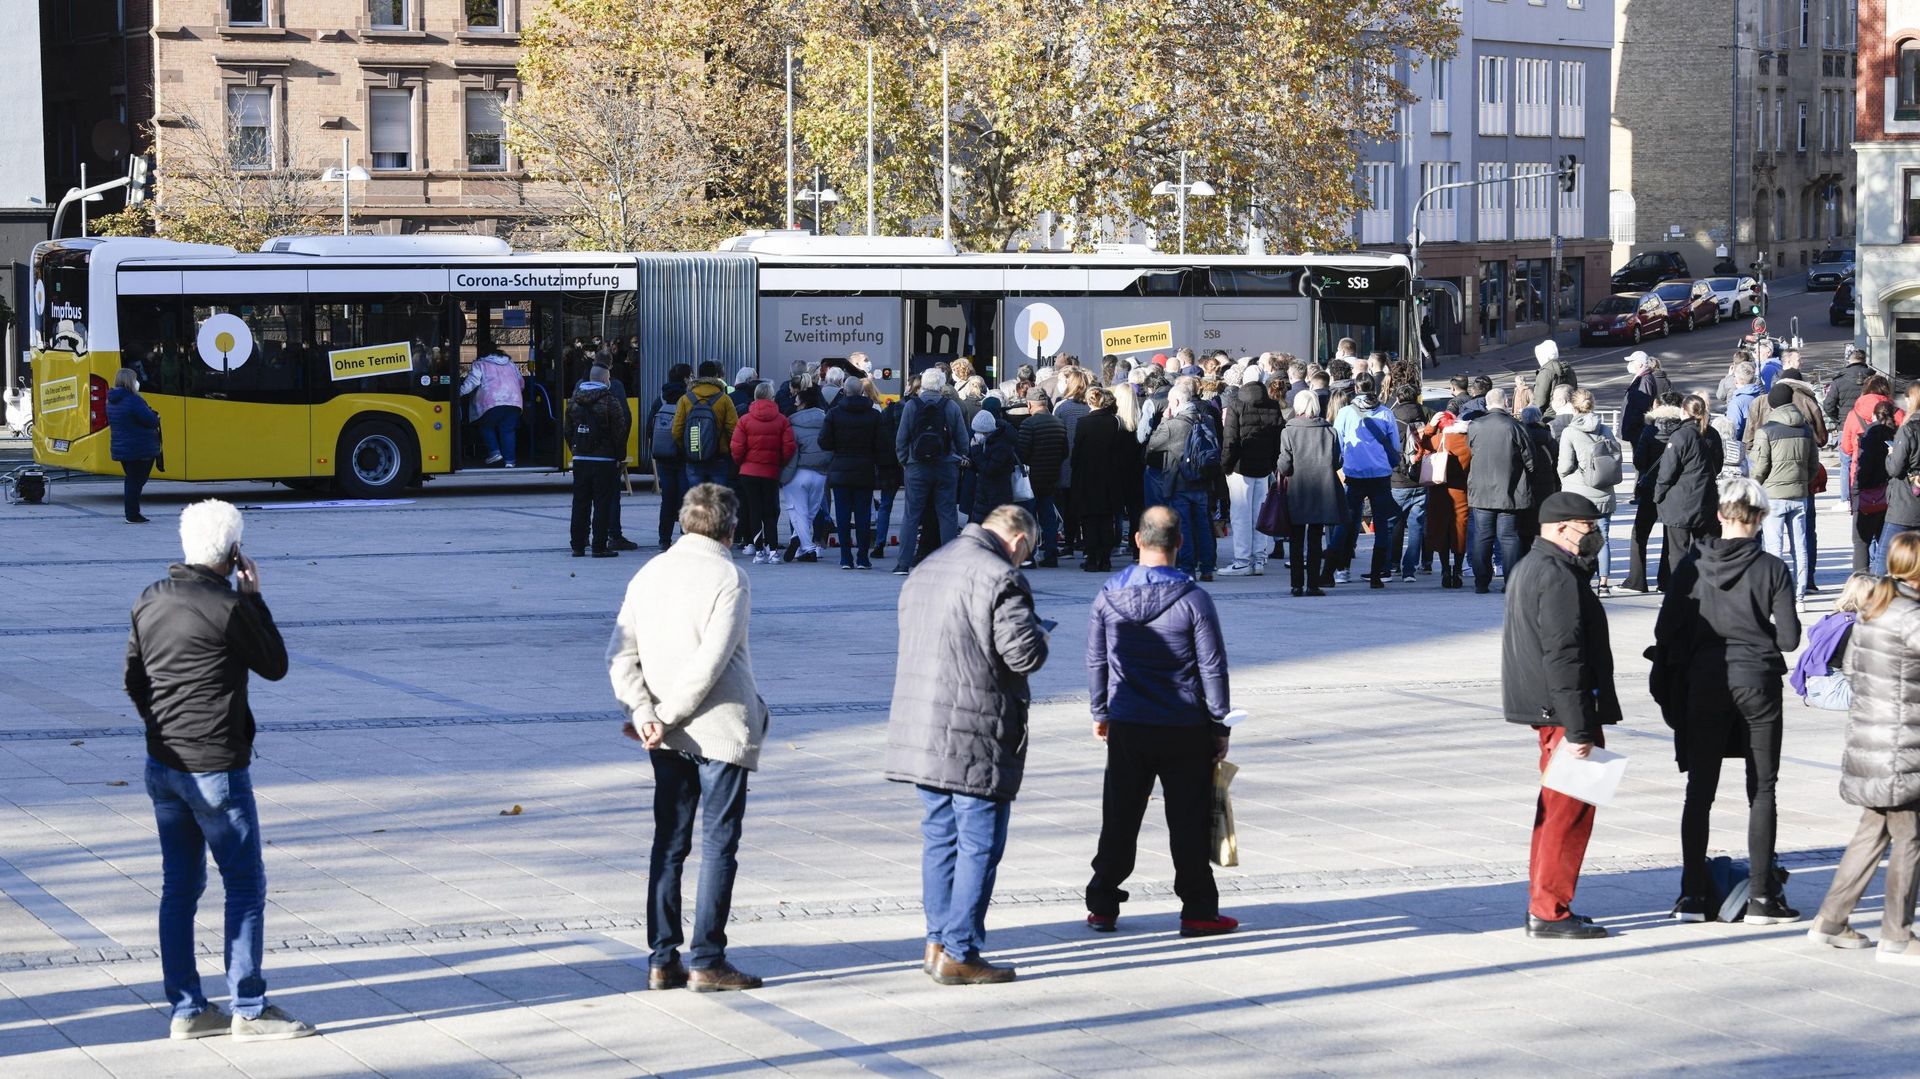 Les Allemands font la queue pour se faire vacciner sans rendez-vous dans les bus à Stuttgart.